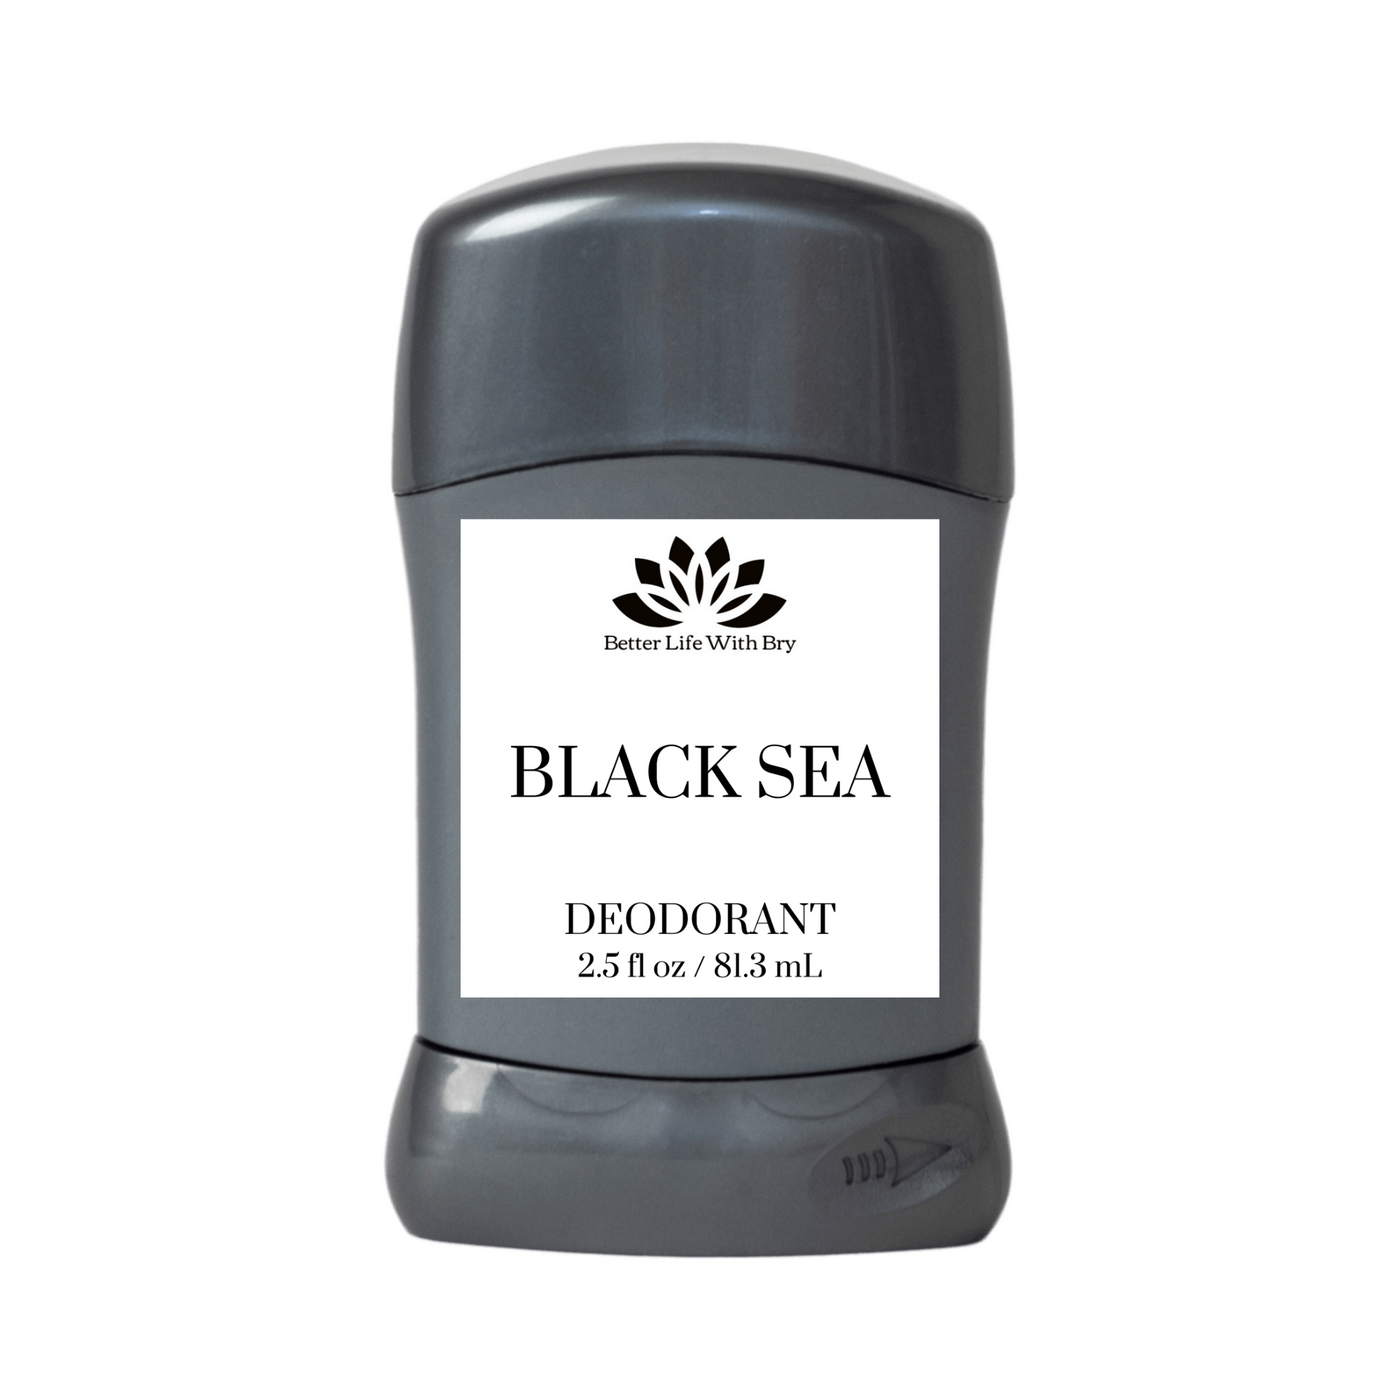 Black Sea Deodorant